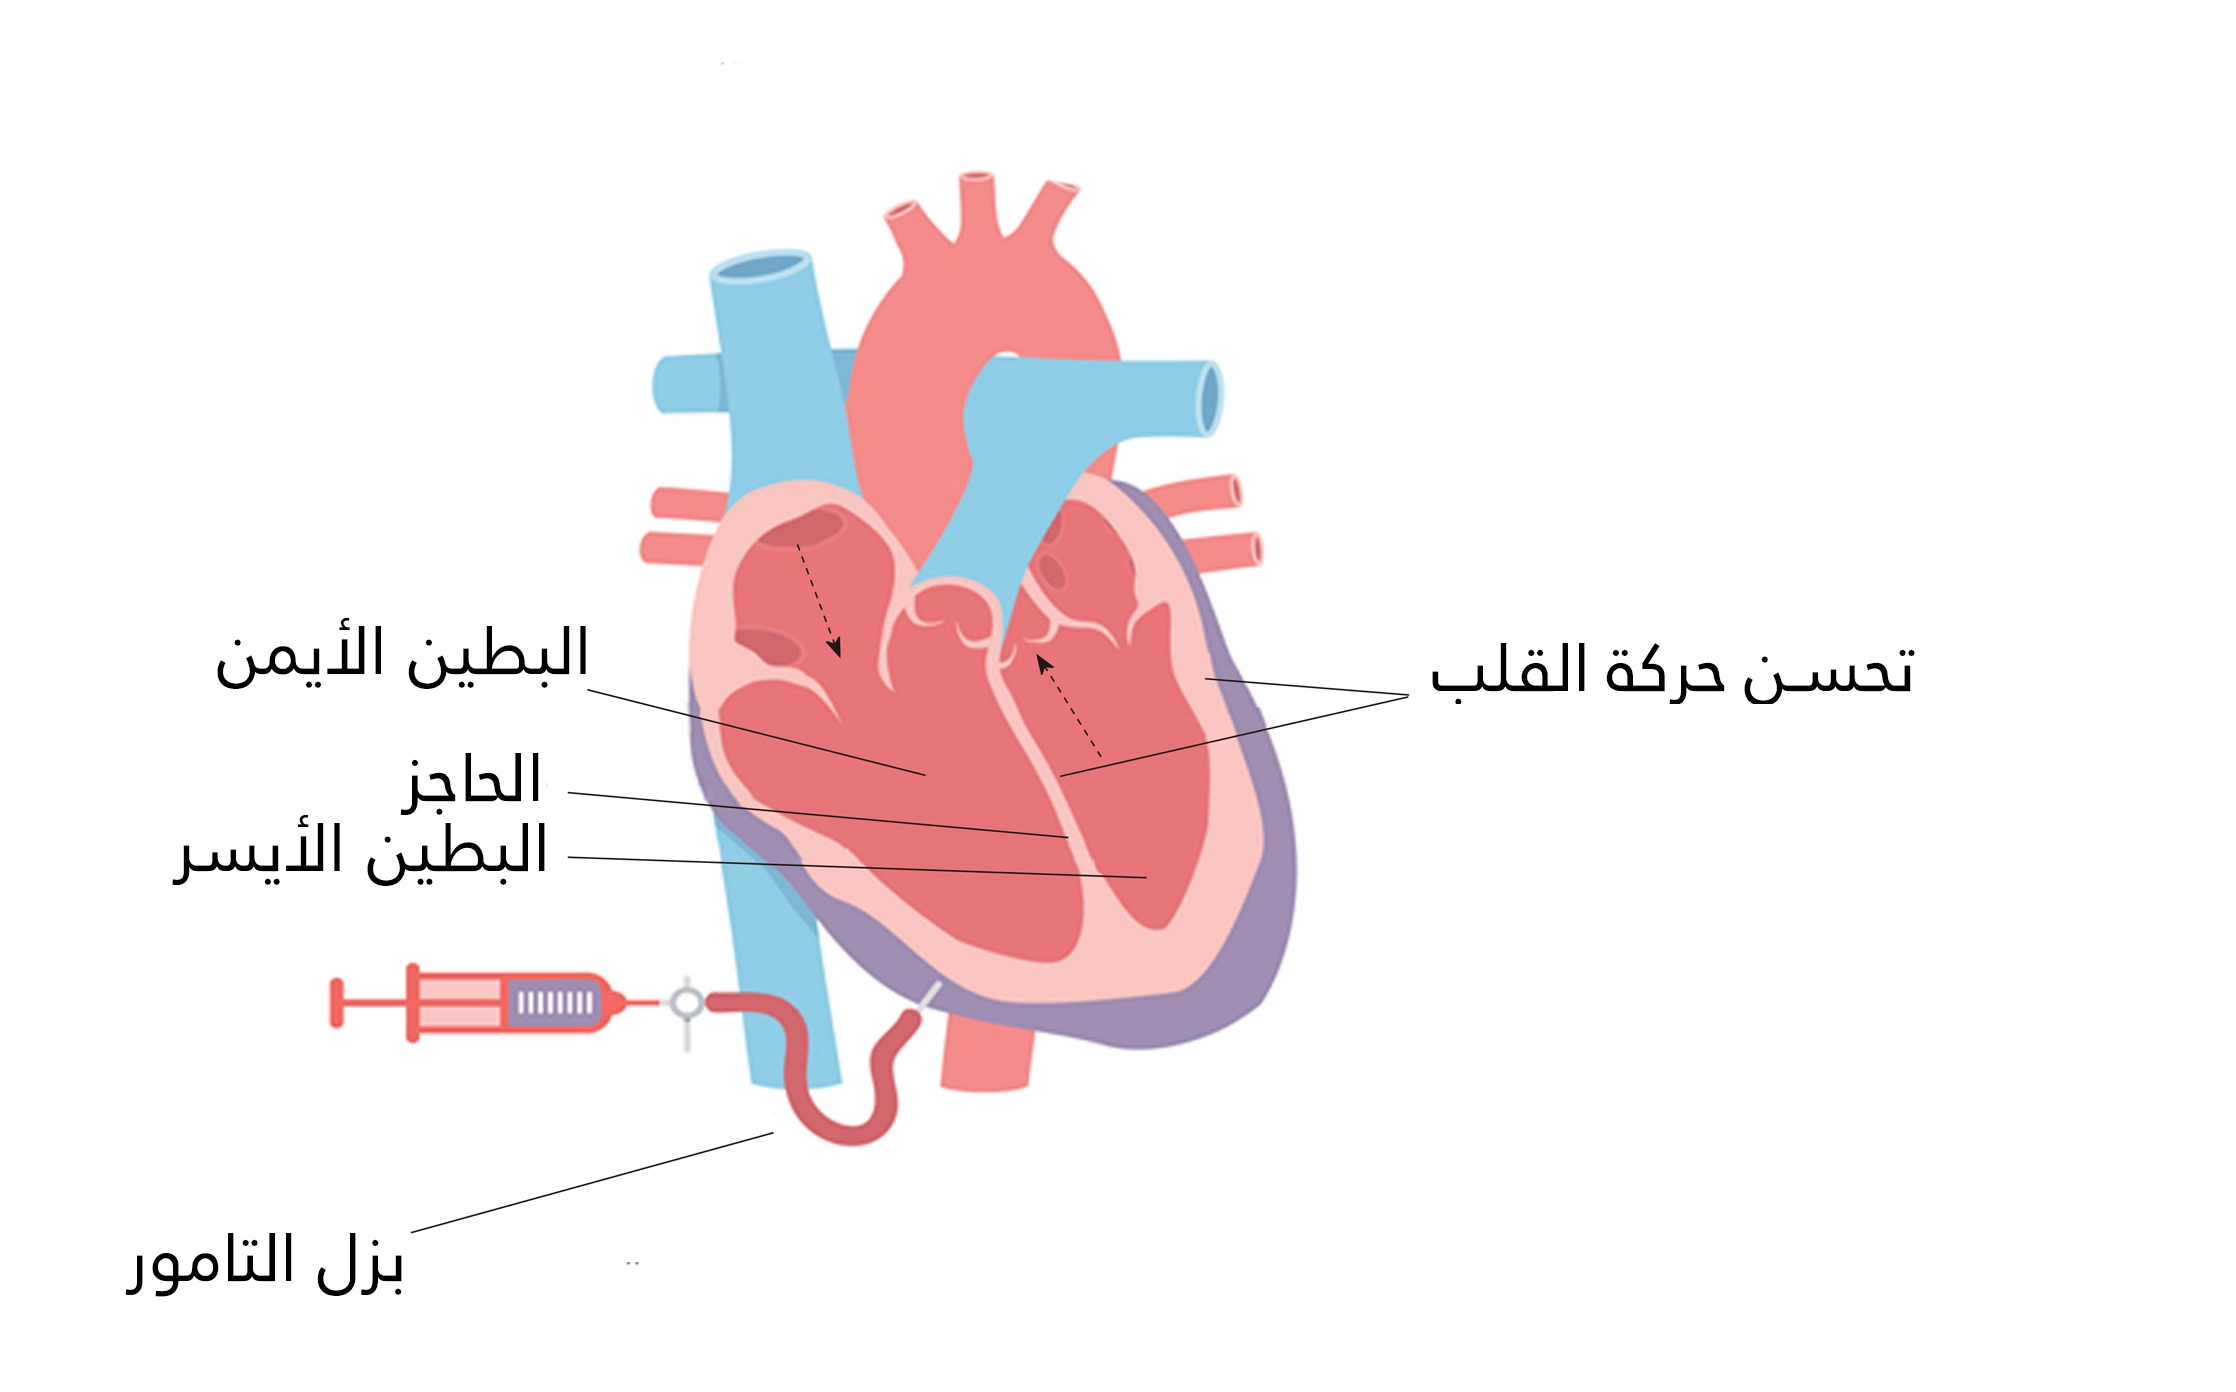 يؤدي بزل التامور في حالة انصباب التامور إلى تحسن حركة القلب